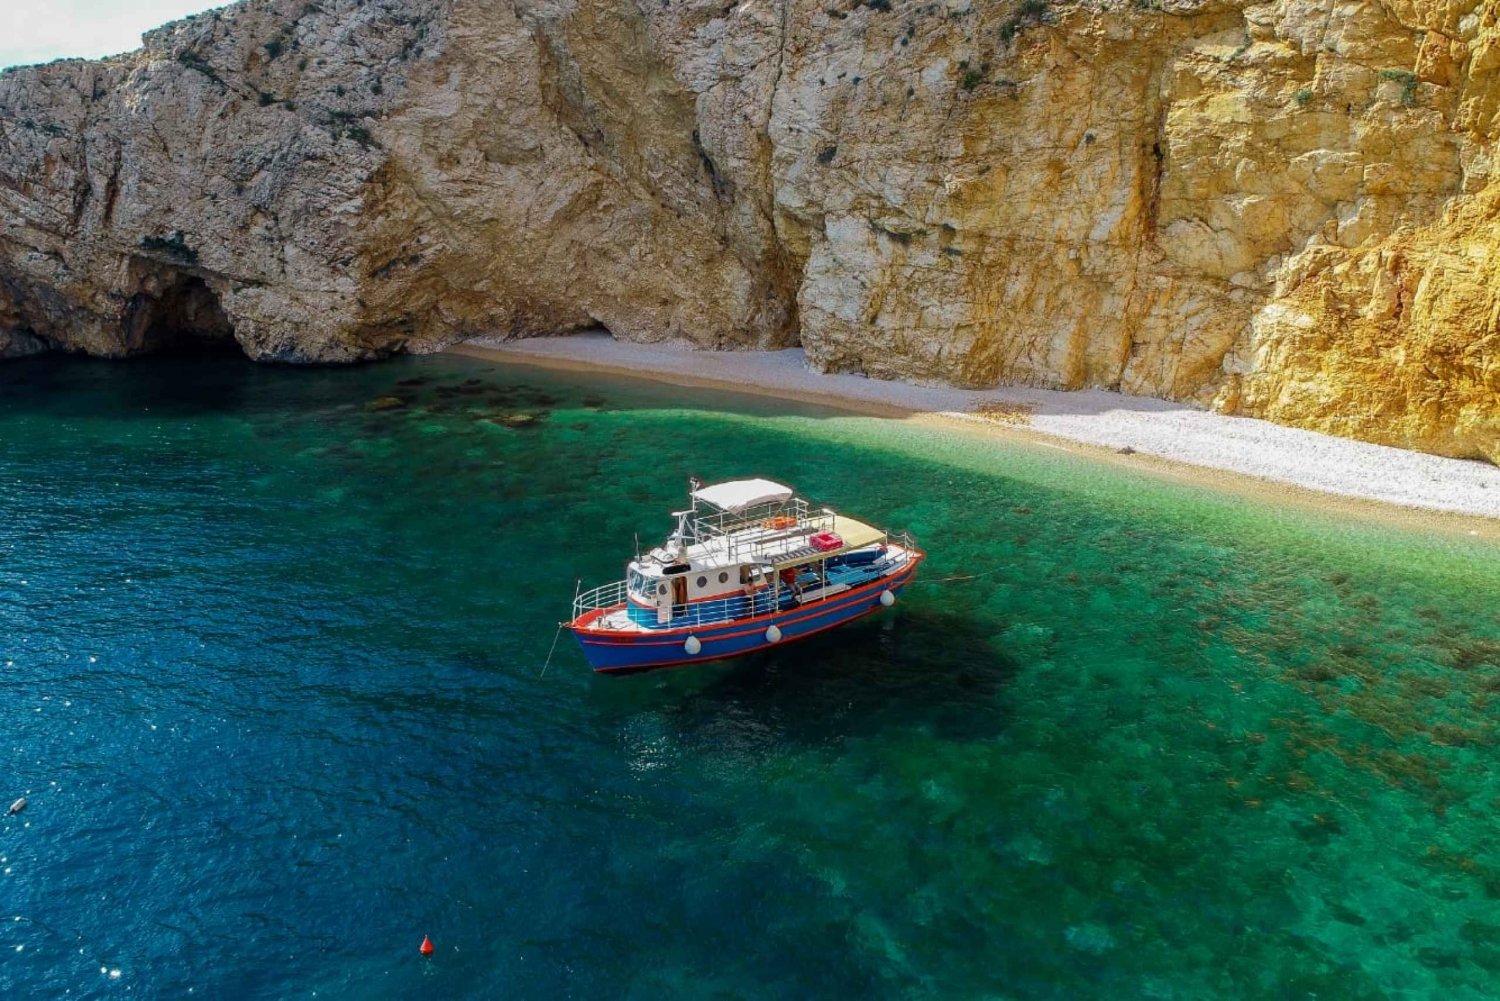 Krk: Crucero por la Playa Dorada y la Cueva de Plavnik con Bebida de Bienvenida